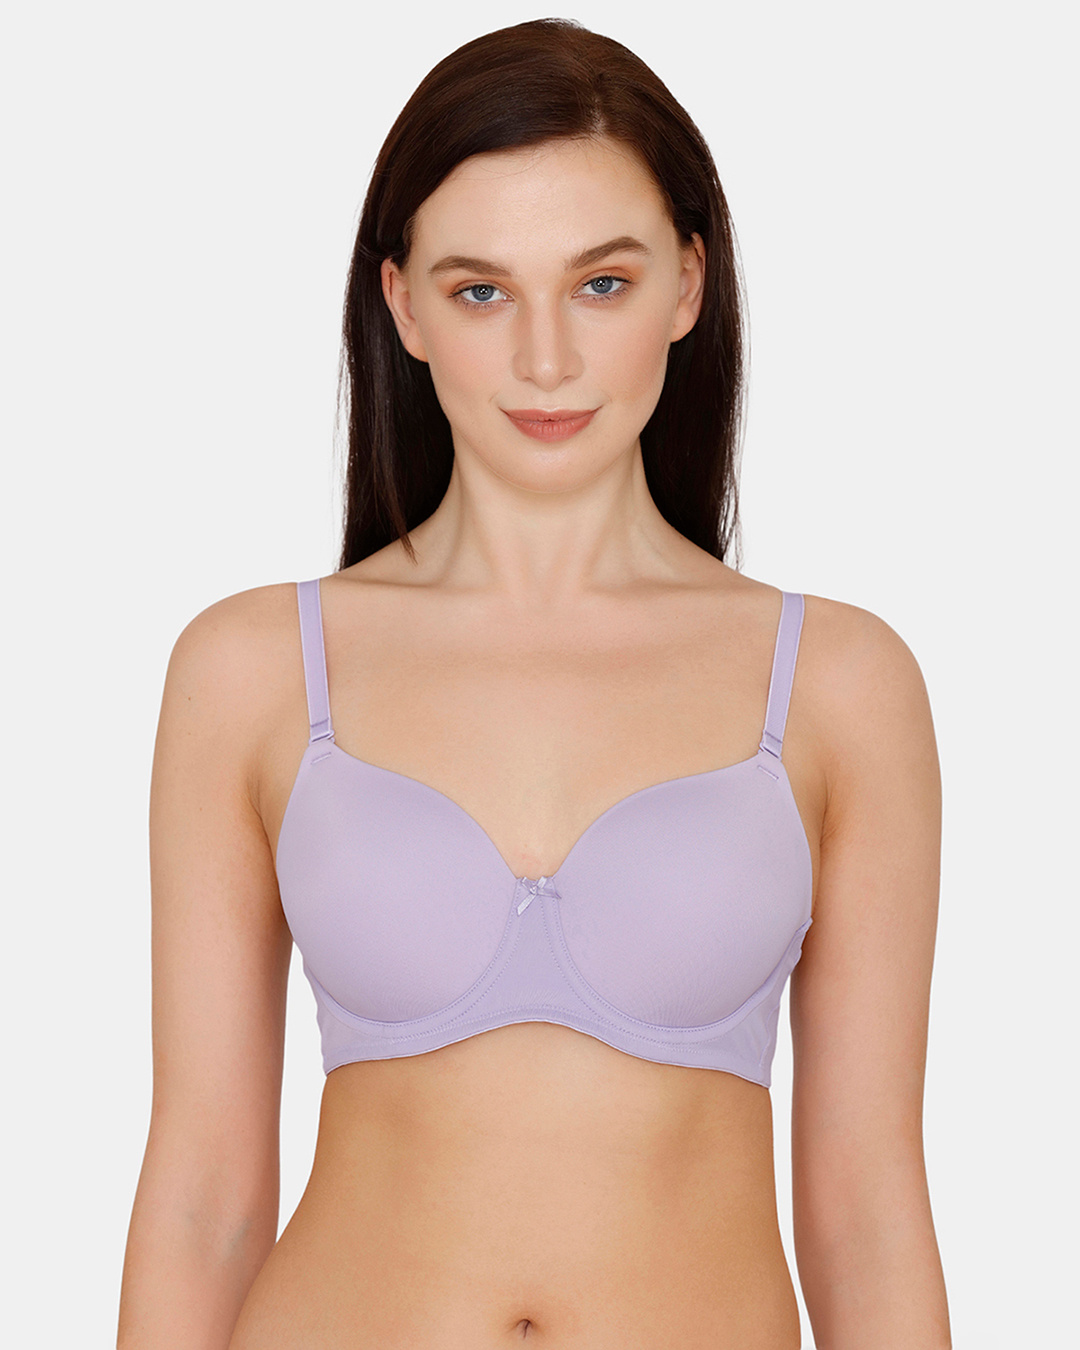 https://images.bewakoof.com/original/zivame-padded-wired-t-shirt-bra--violet-tulip-403111-1631102917-1.jpg